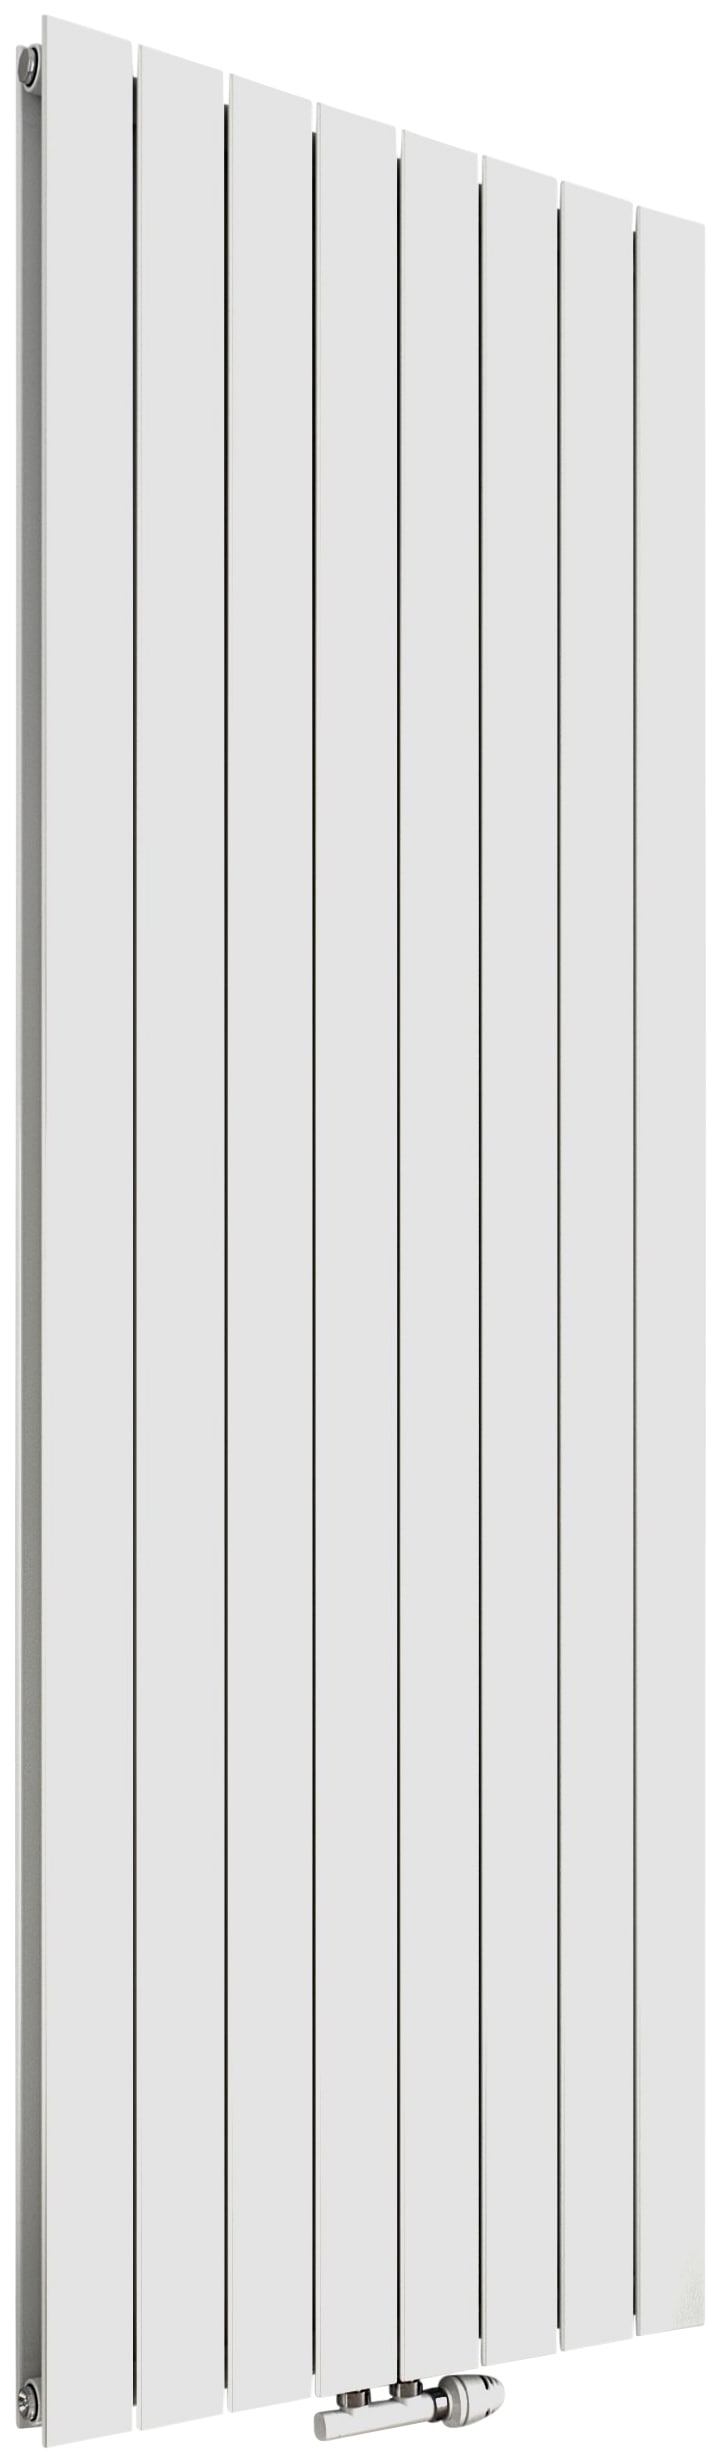 Paneelheizkörper »P1 Duplex 1800 mm x 595 mm«, 1576 Watt, Mittenanschluss, weiß